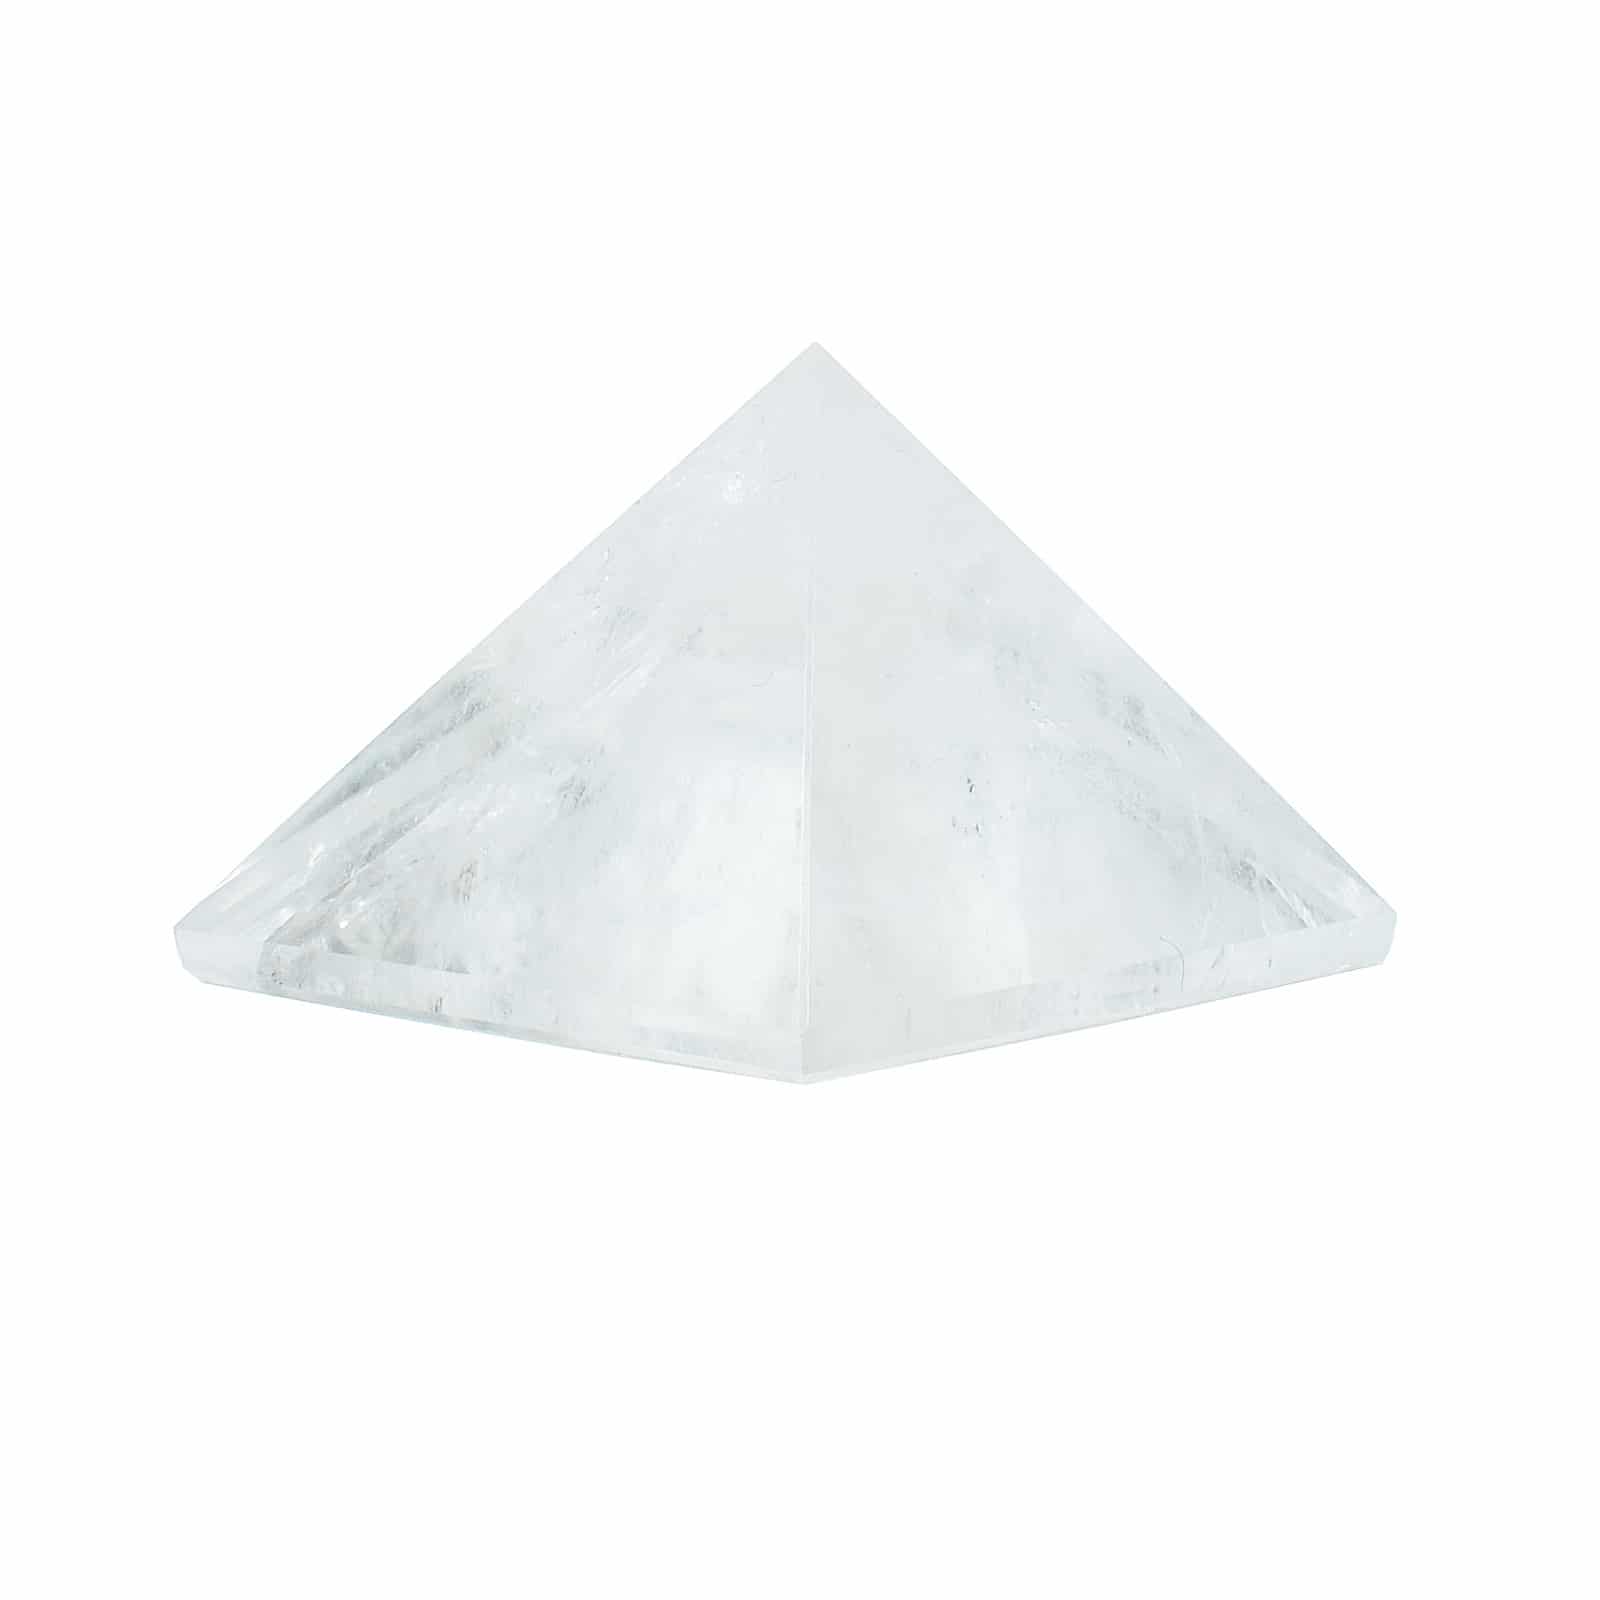 Πυραμίδα από κρύσταλλο χαλαζία. Ιδανική για διακόσμηση χώρου! Αγοράστε online shop.